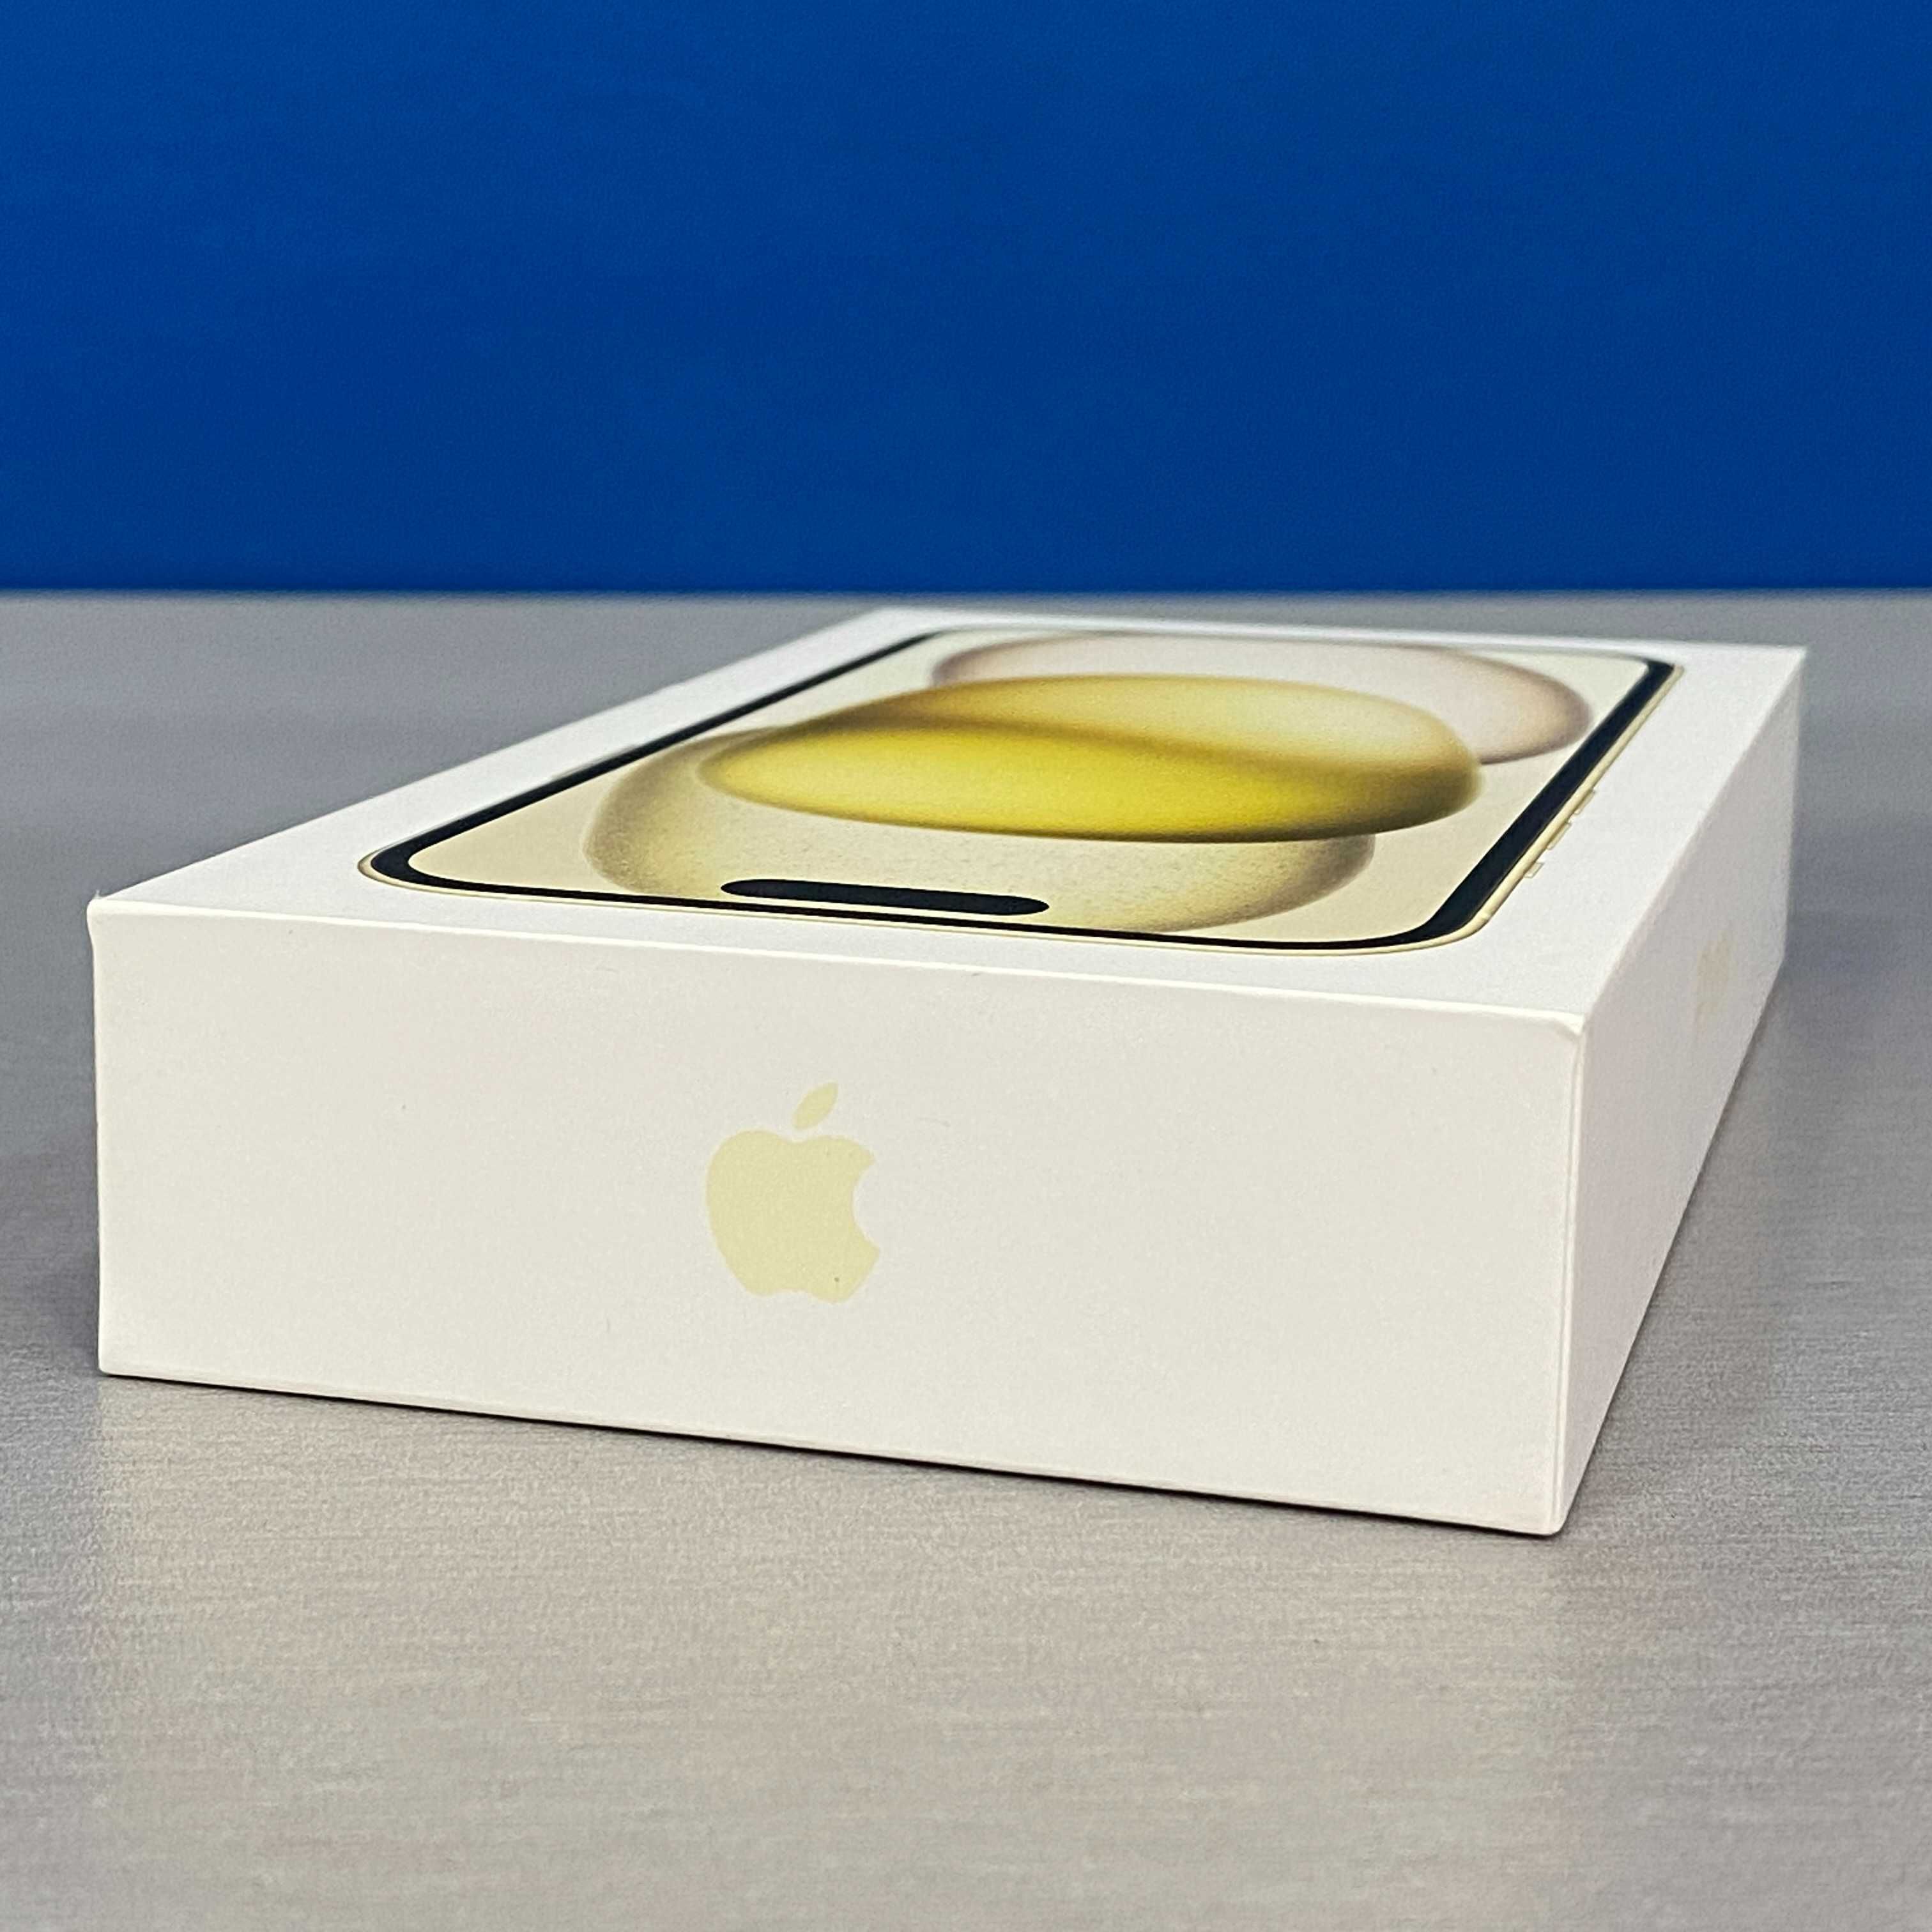 Apple iPhone 15 128GB (Yellow) - SELADO - 3 ANOS DE GARANTIA